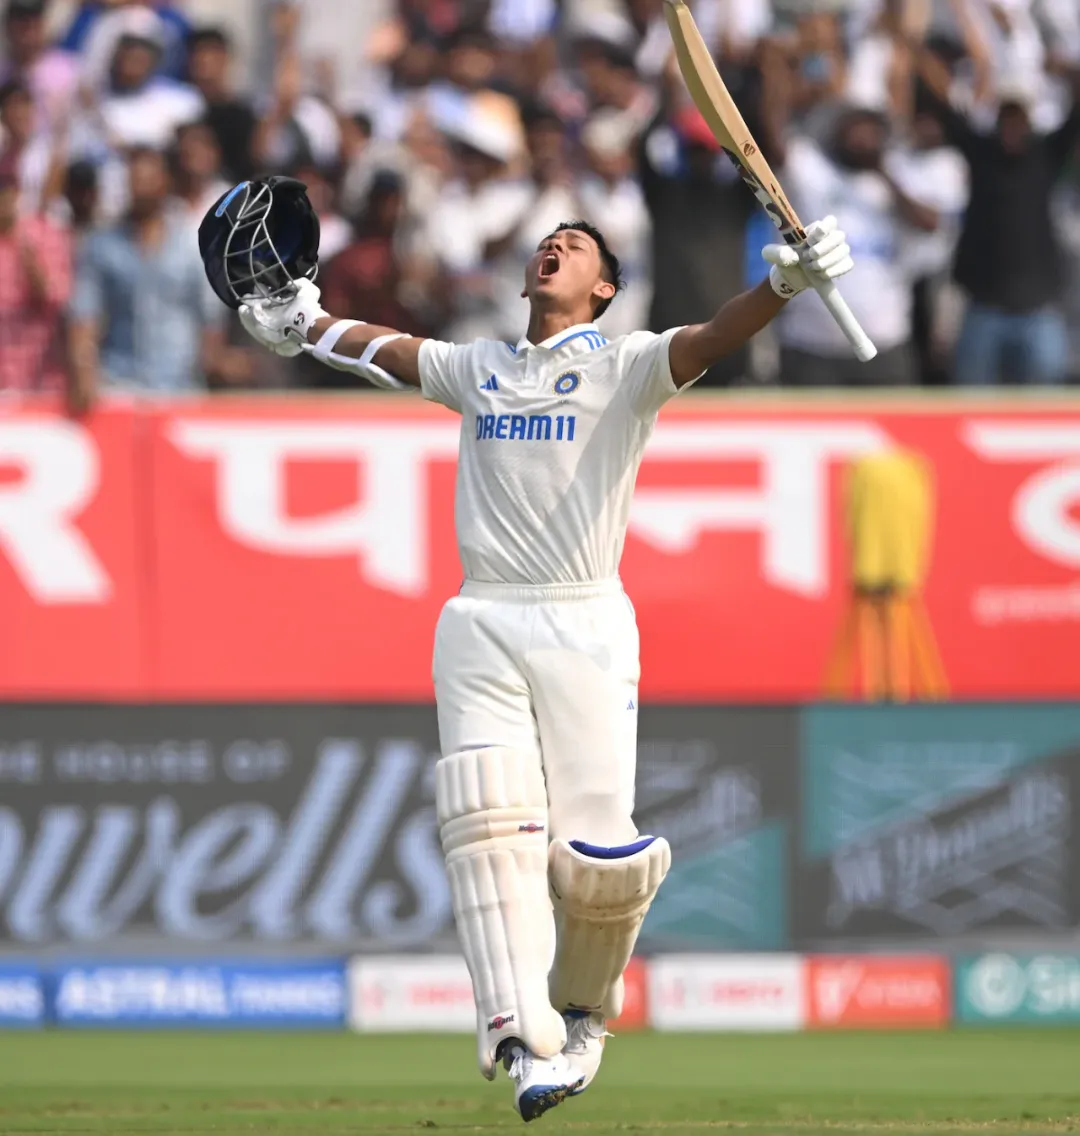 Yashasvi Jaiswal Double Century: यशस्वी जयसवाल ने जड़ा टेस्ट करियर का पहला दोहरा शतक ! बुमराह की शानदार गेंदबाजी, दूसरे टेस्ट में भारत मजबूत स्थिति में